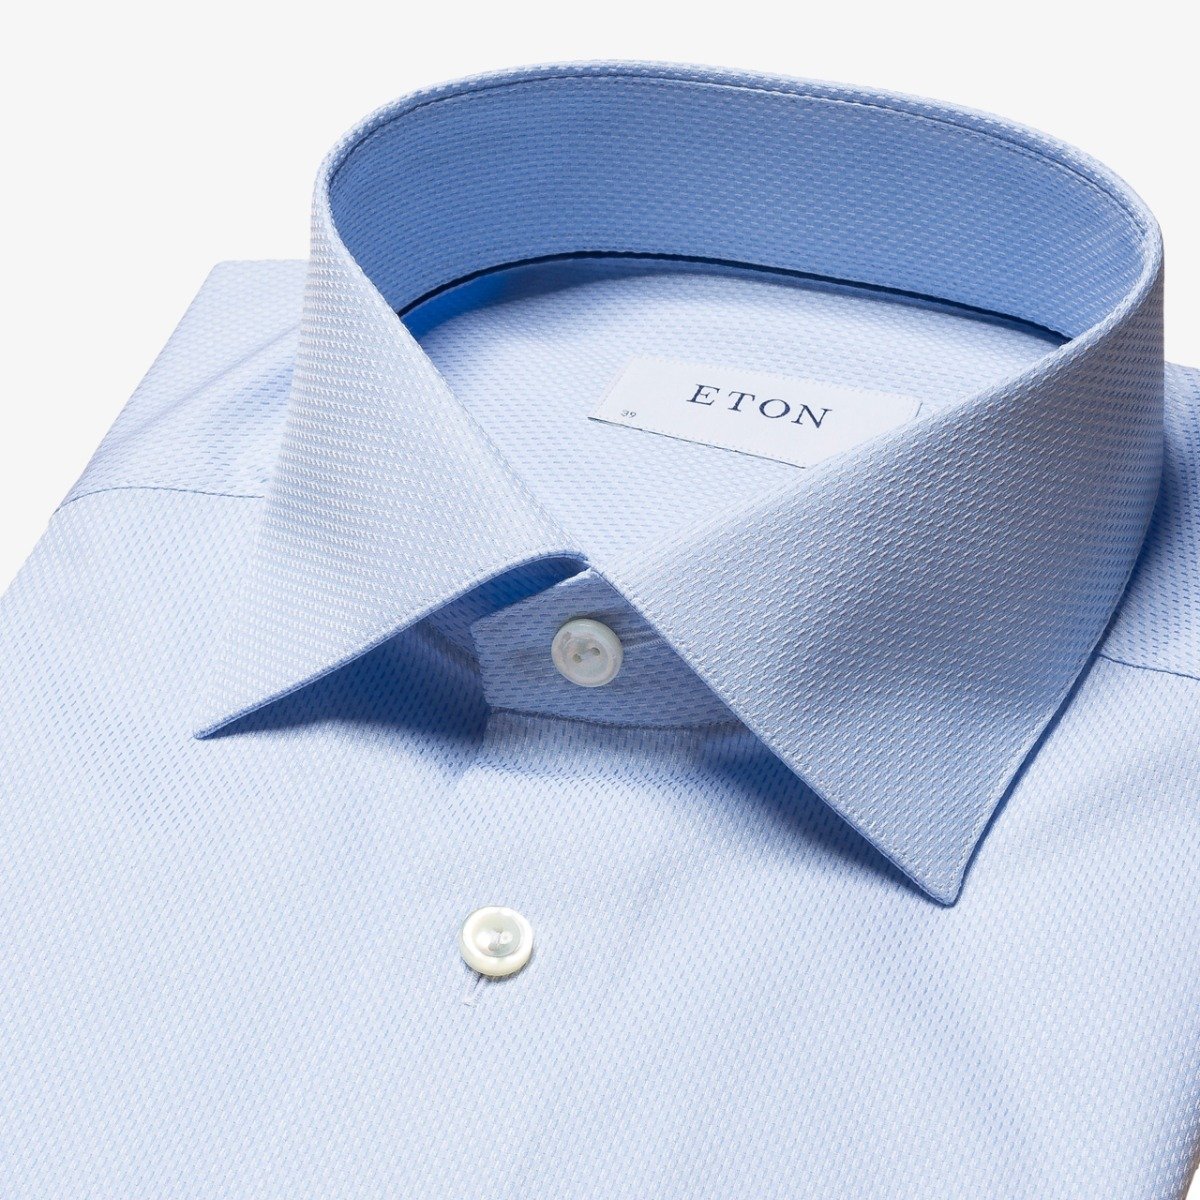 Eton blue slim fit fine pique men's dress shirt